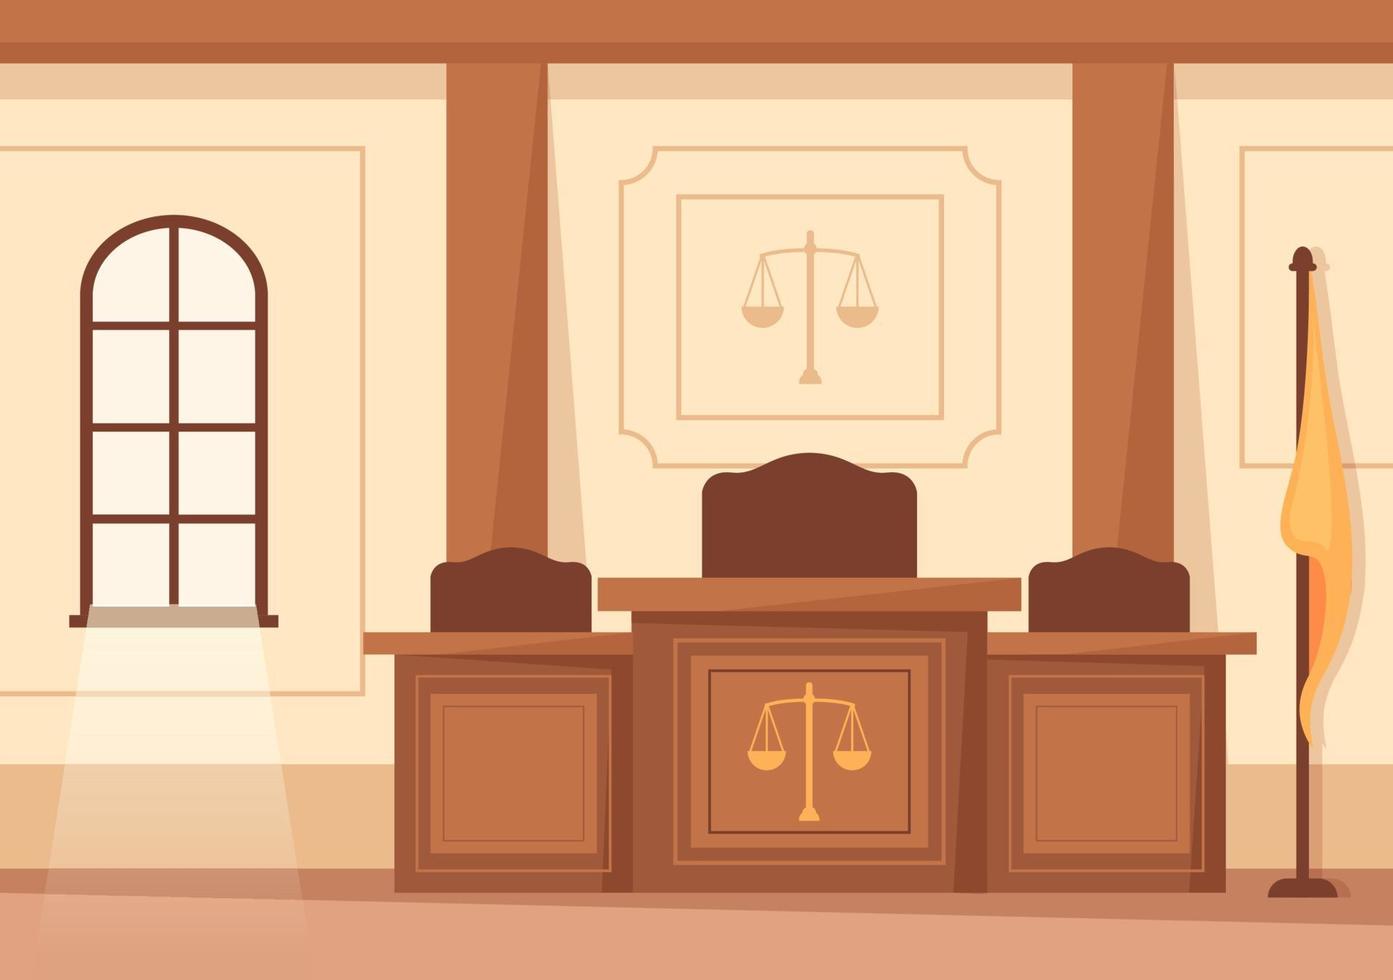 domstol rum interiör med bedöma eller jury tabell, flagga och trä- domarens hammare i platt tecknad serie design illustration vektor